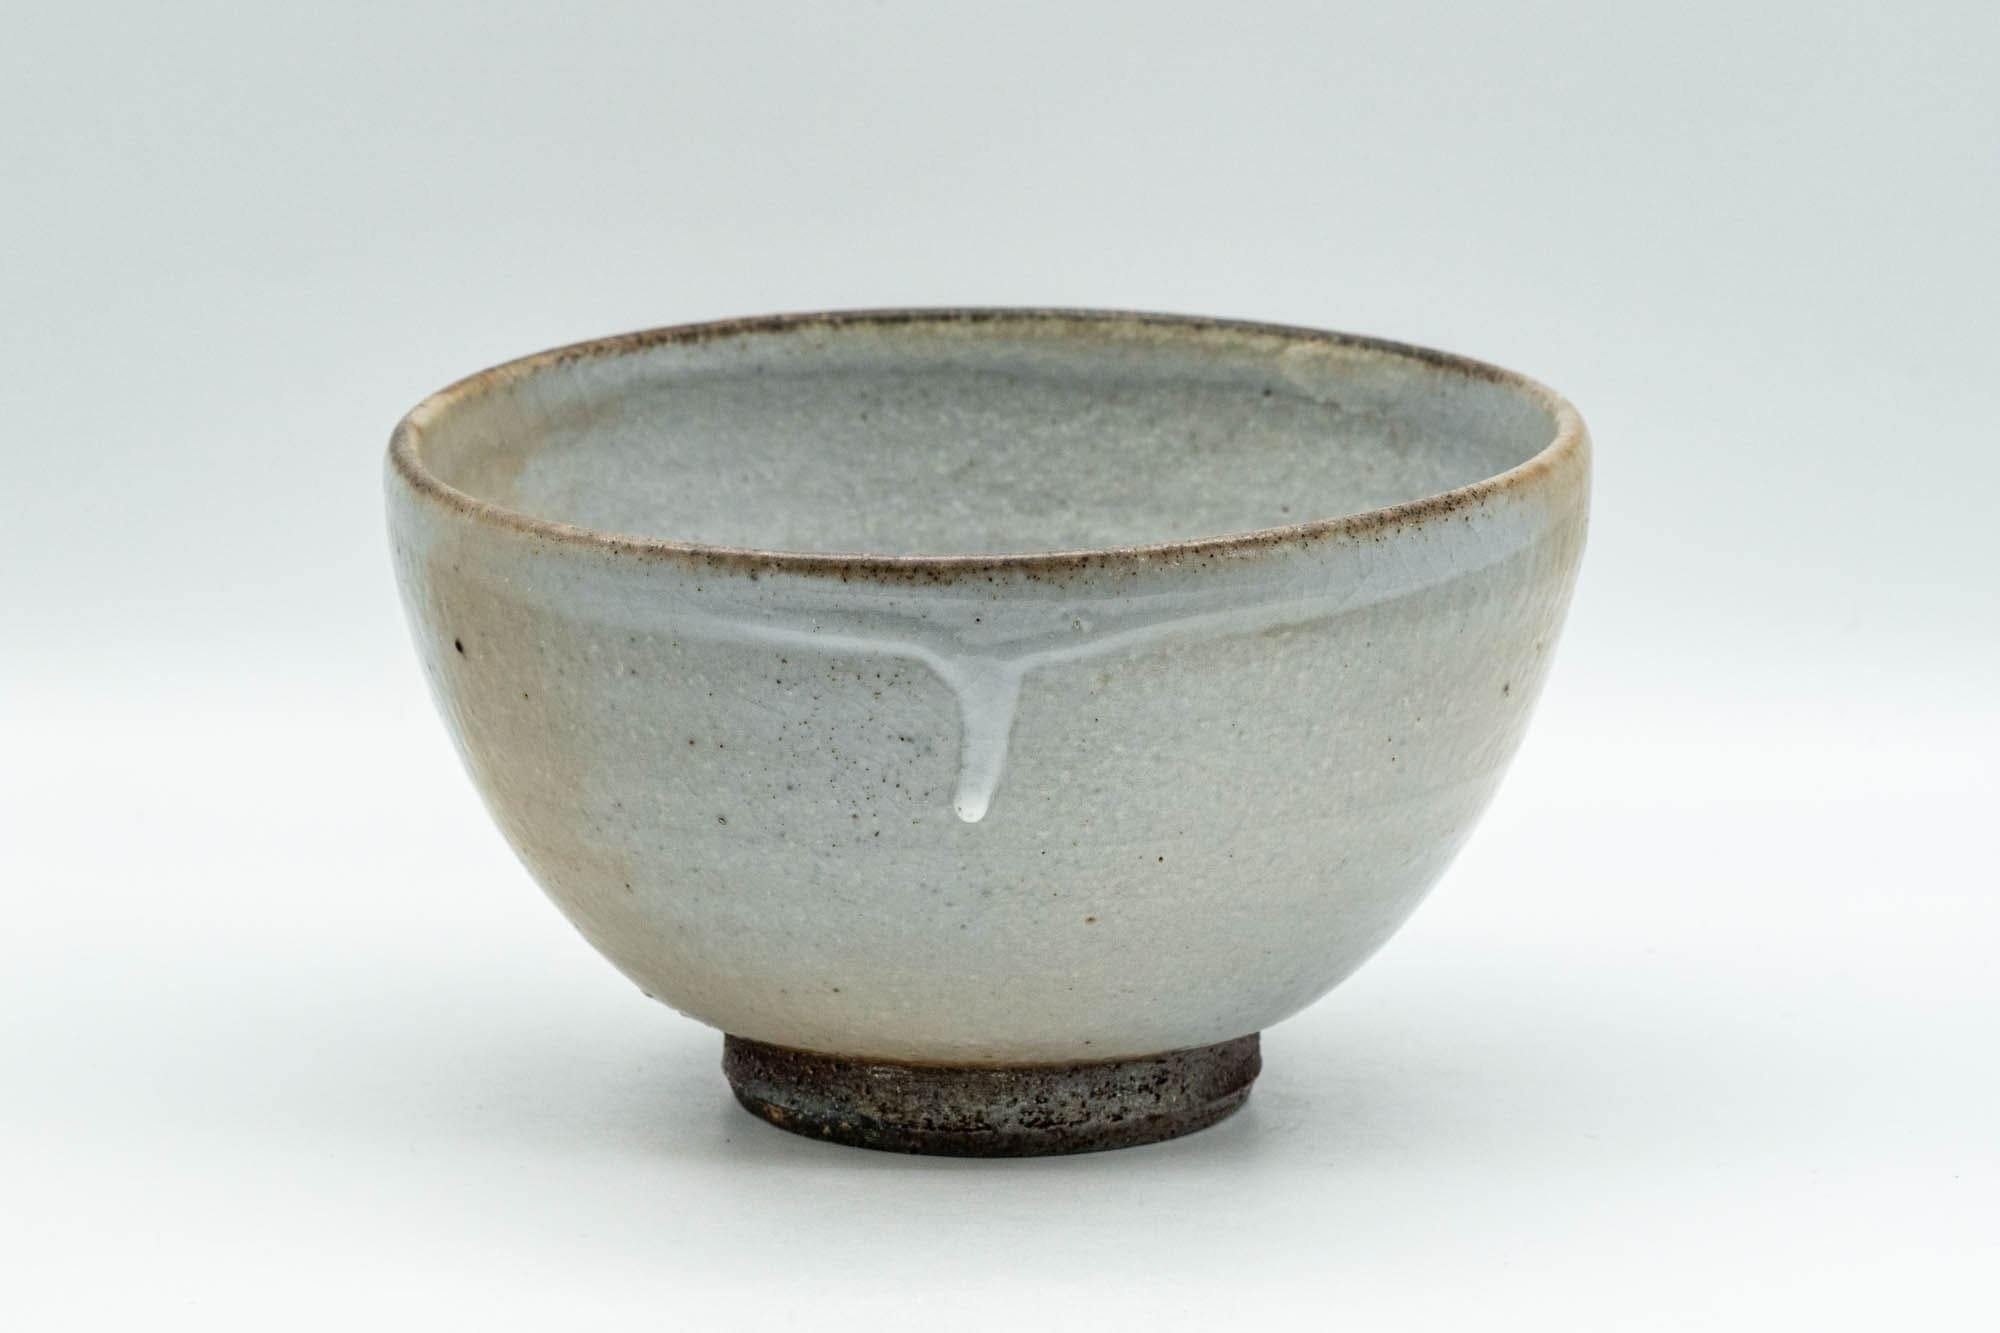 Japanese Matcha Bowl - Specked Grey Glazed Wan-nari Chawan - 350ml - Tezumi